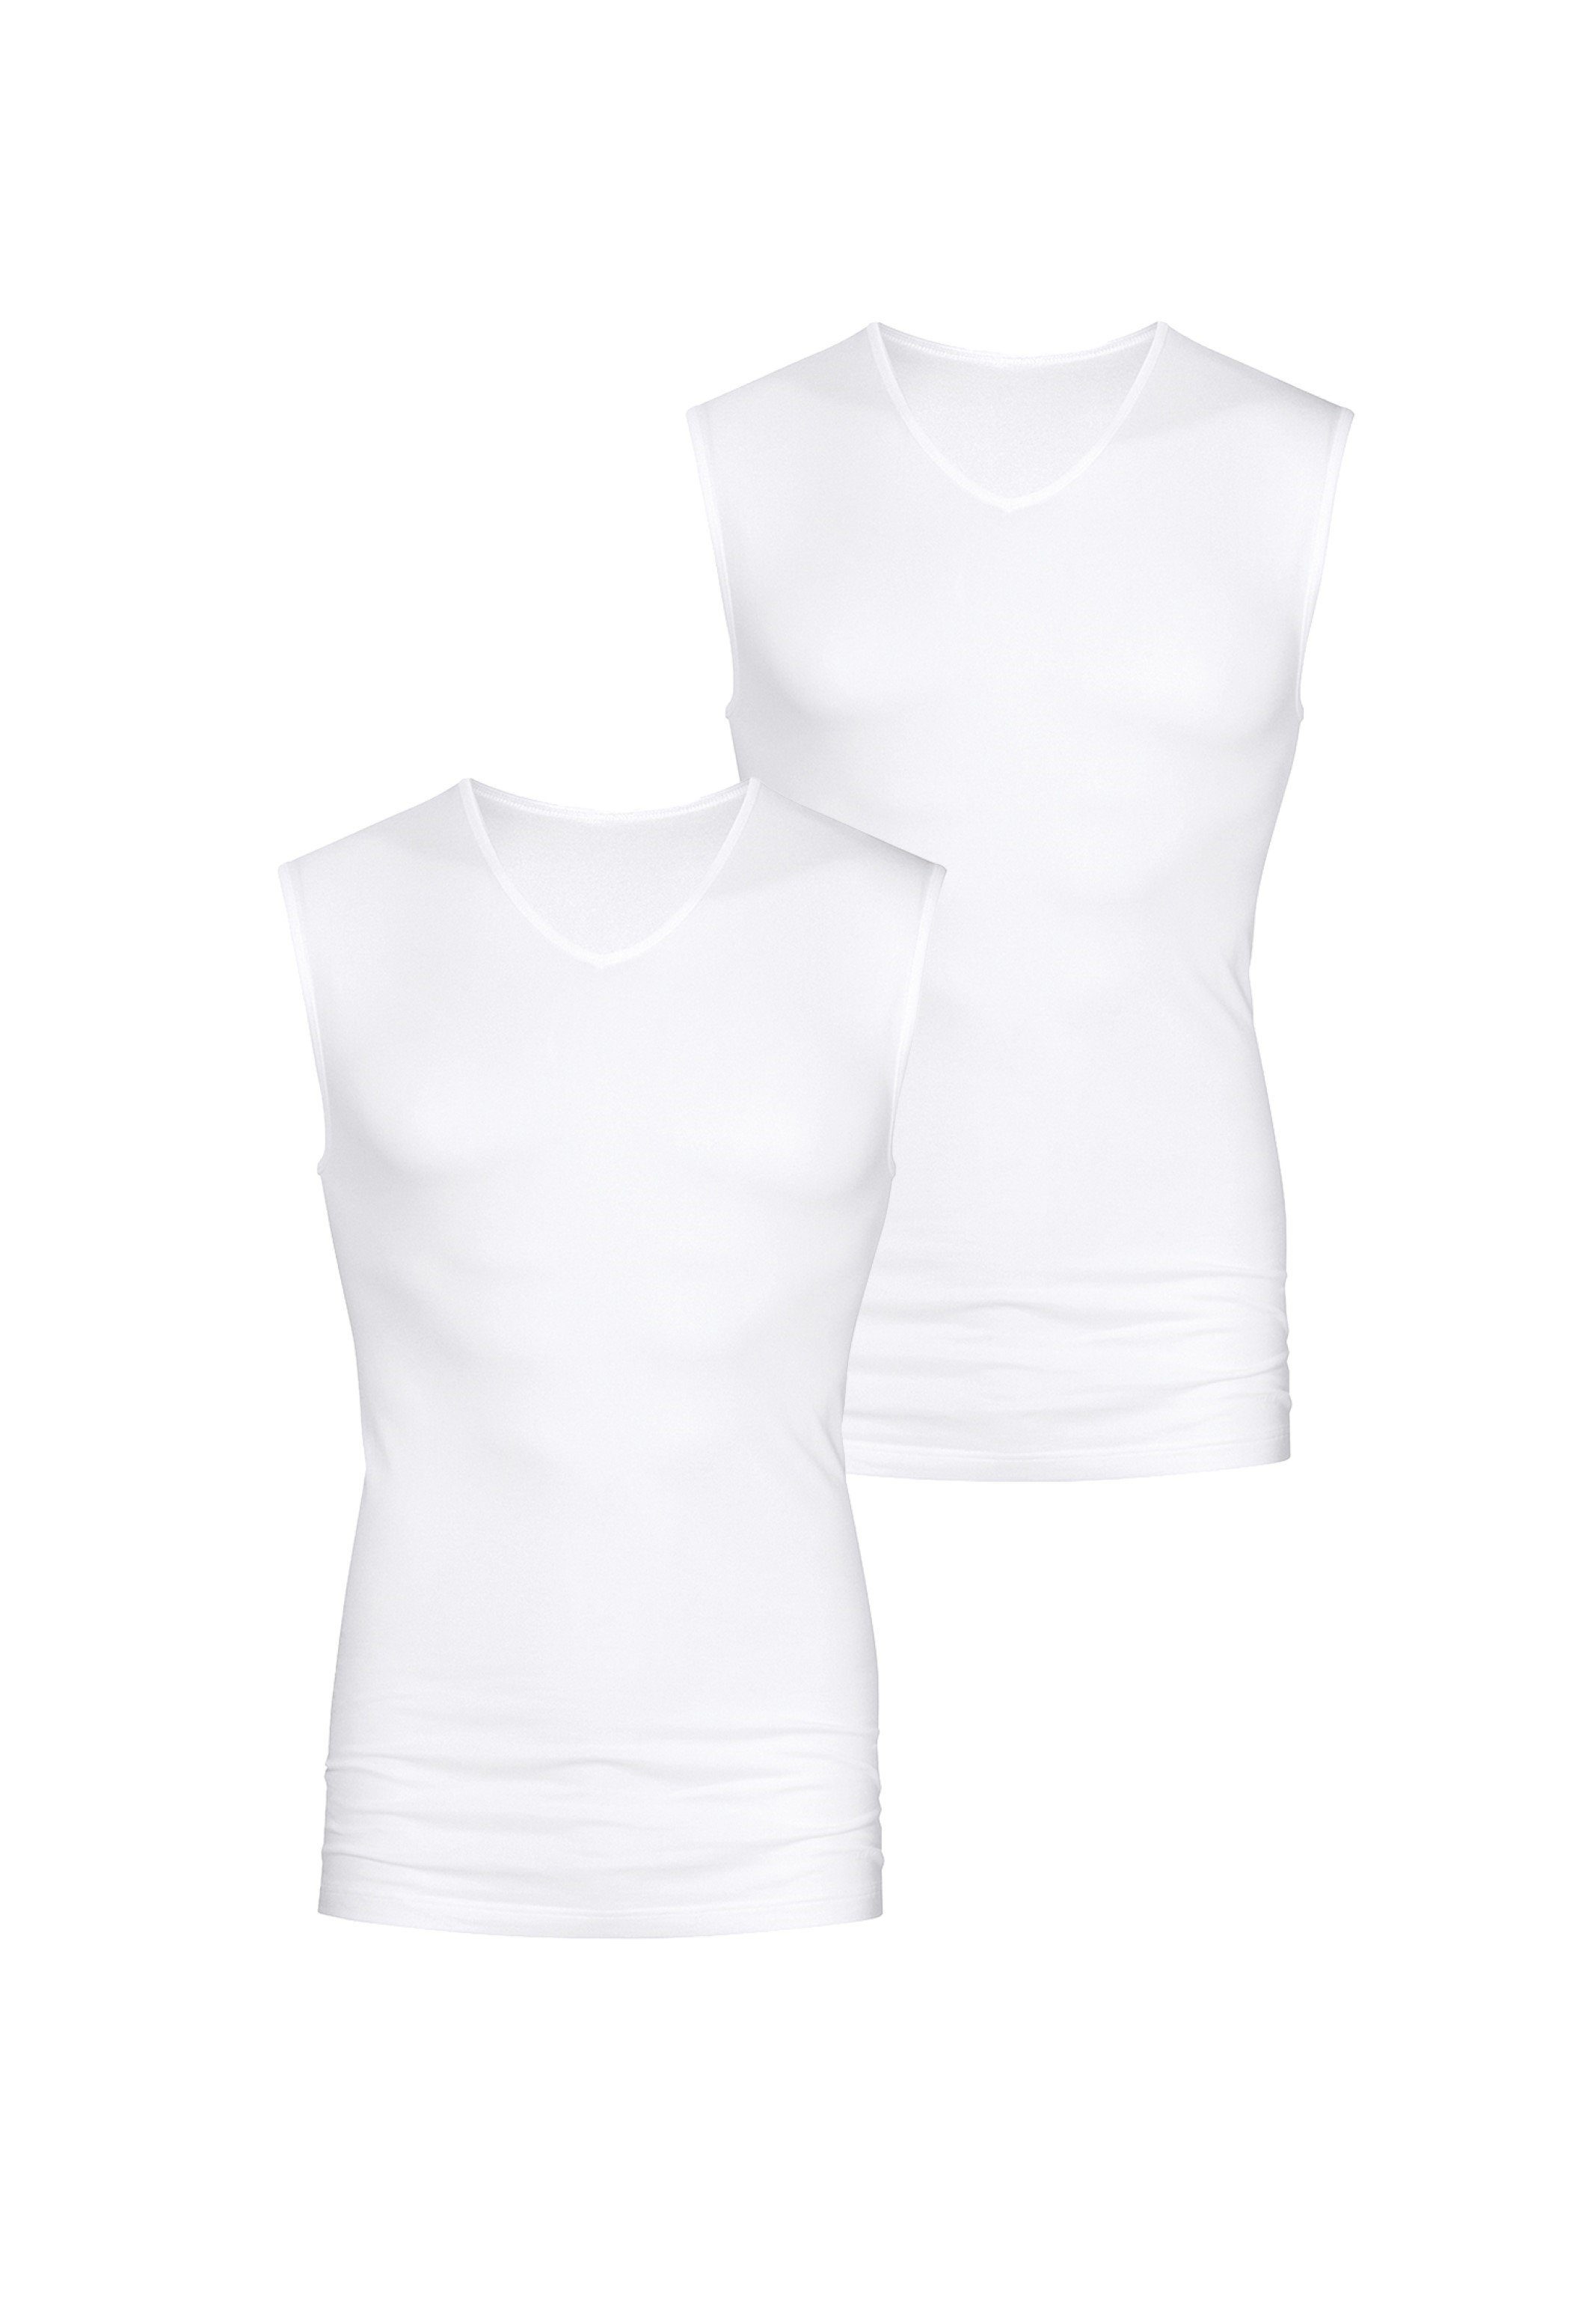 Wäsche/Bademode Unterhemden Mey Unterhemd 2er Pack Software (2 Stück), Muskel-Shirt - Unterhemd - Ohne auftragende Seitennähte, 